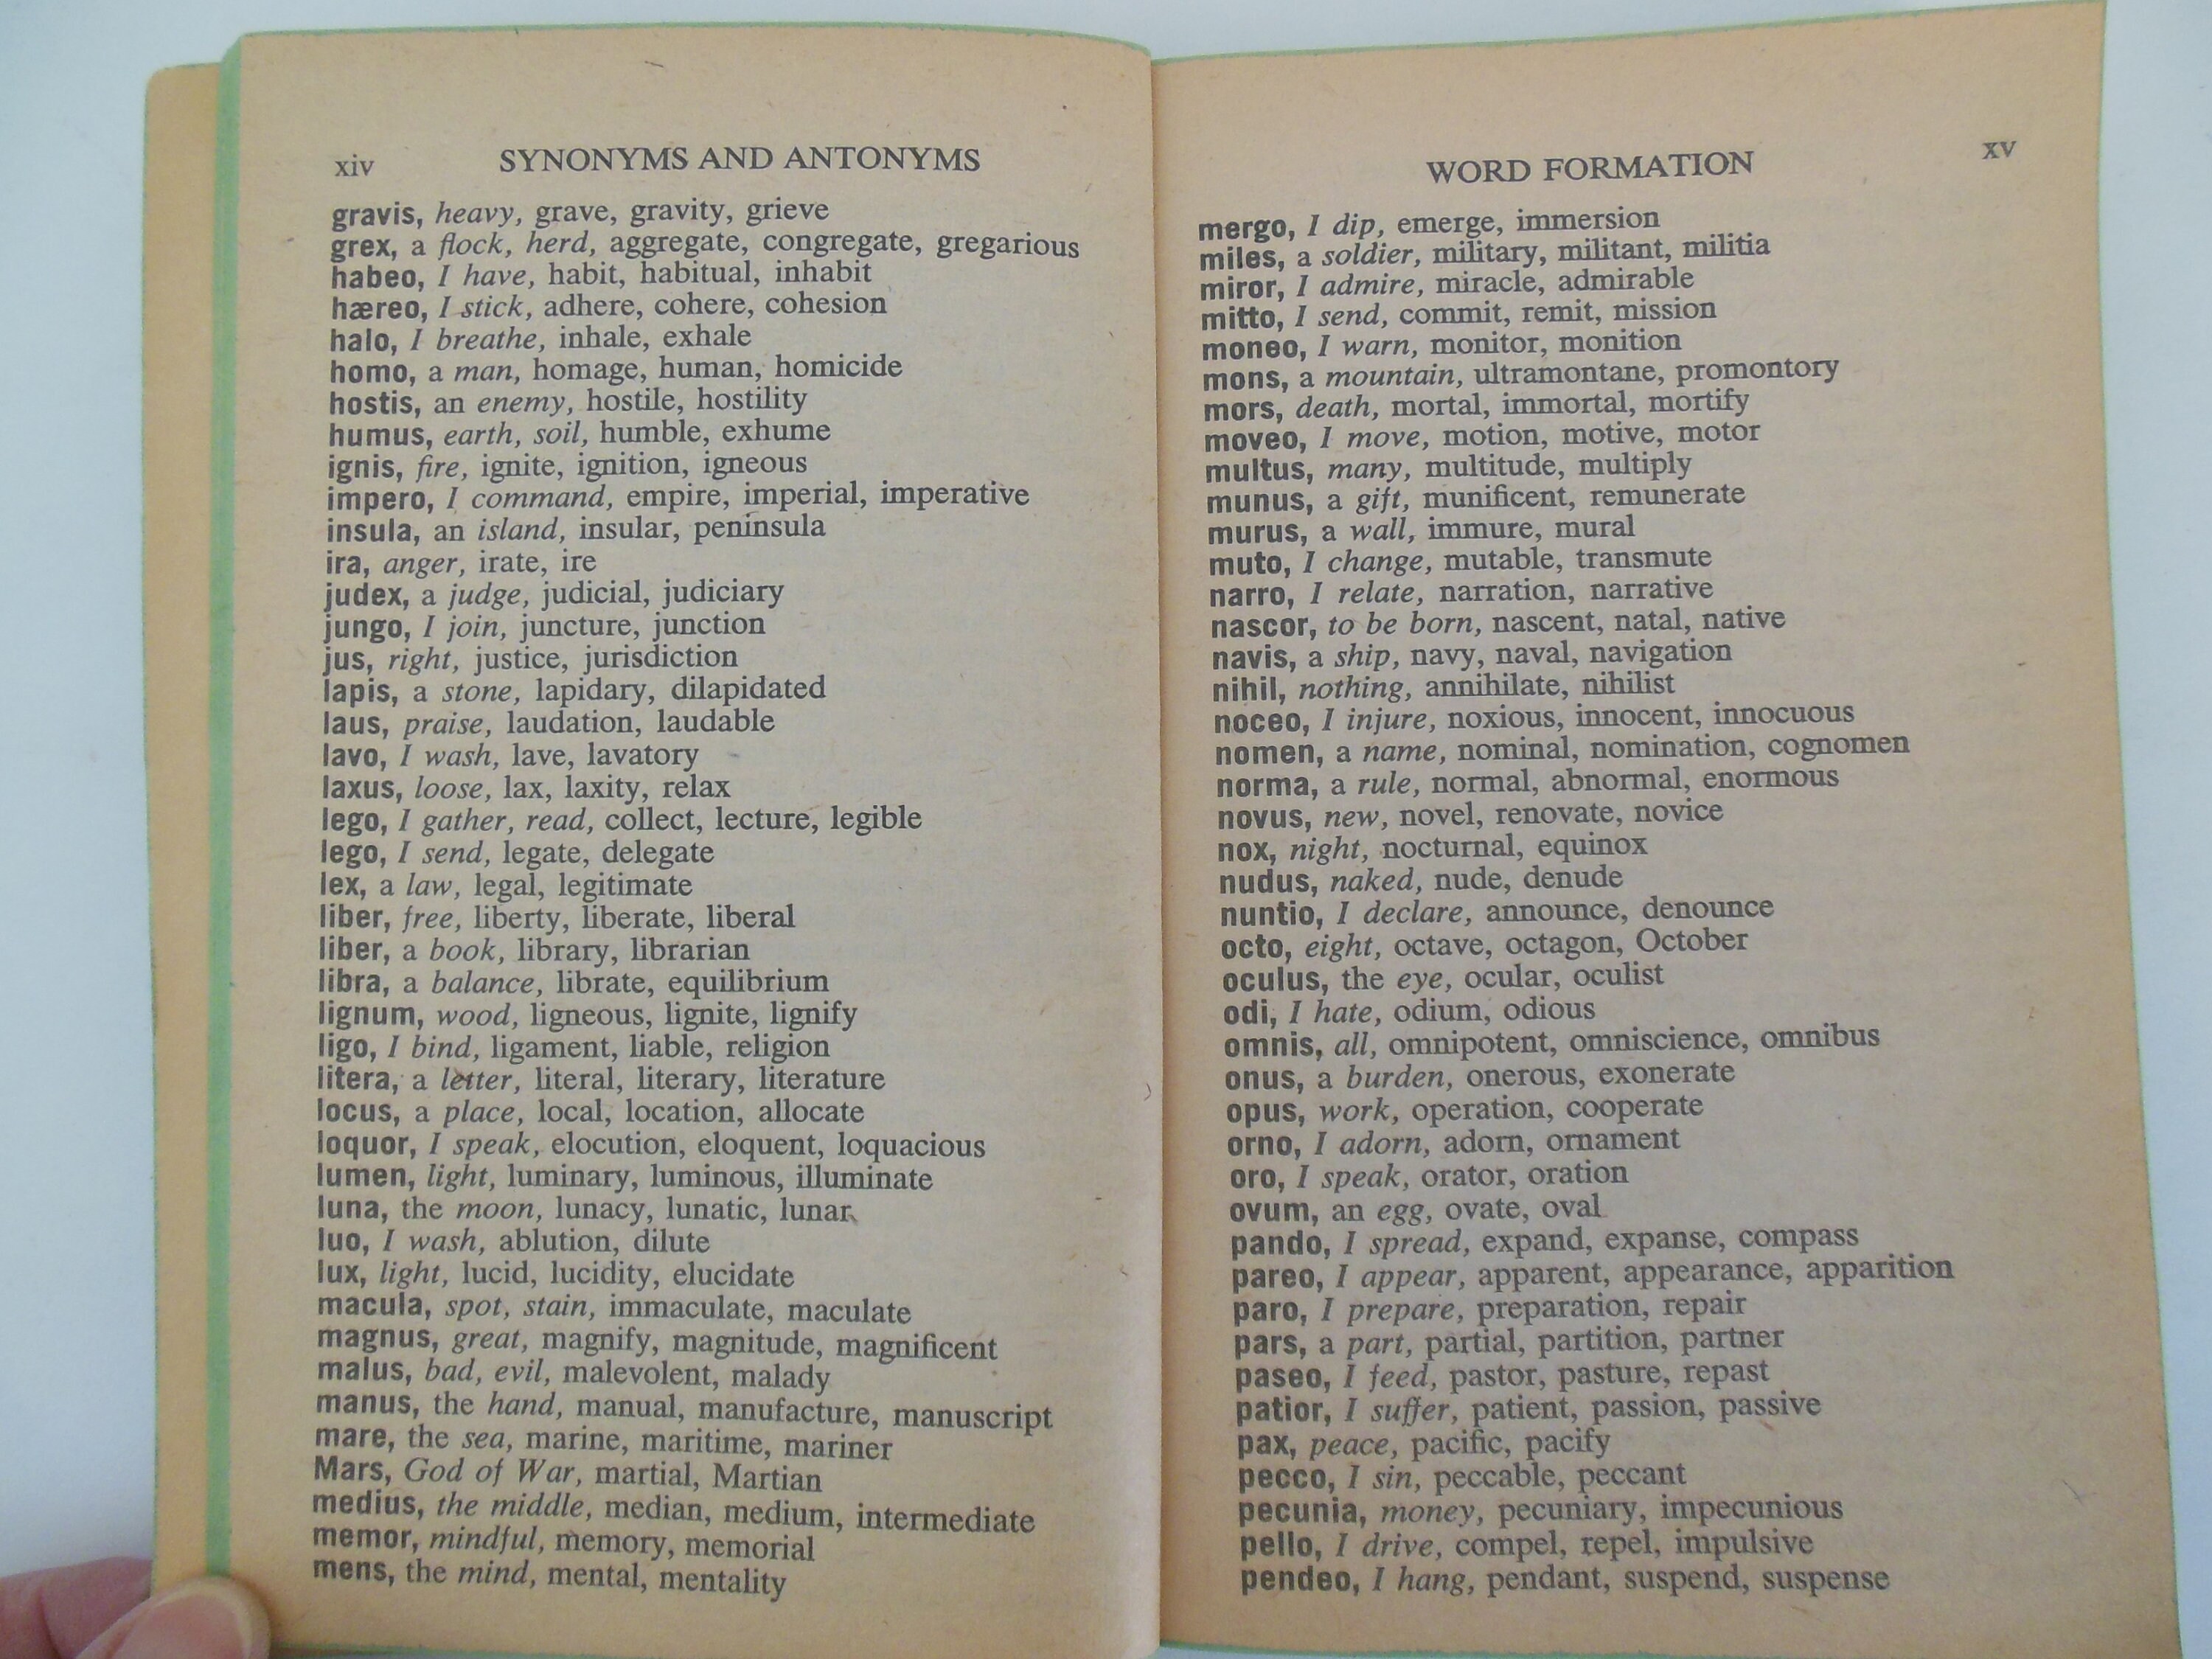 Dennison Synonym Antonym Homonym Dictionary for loose-leaf notebooks 1962